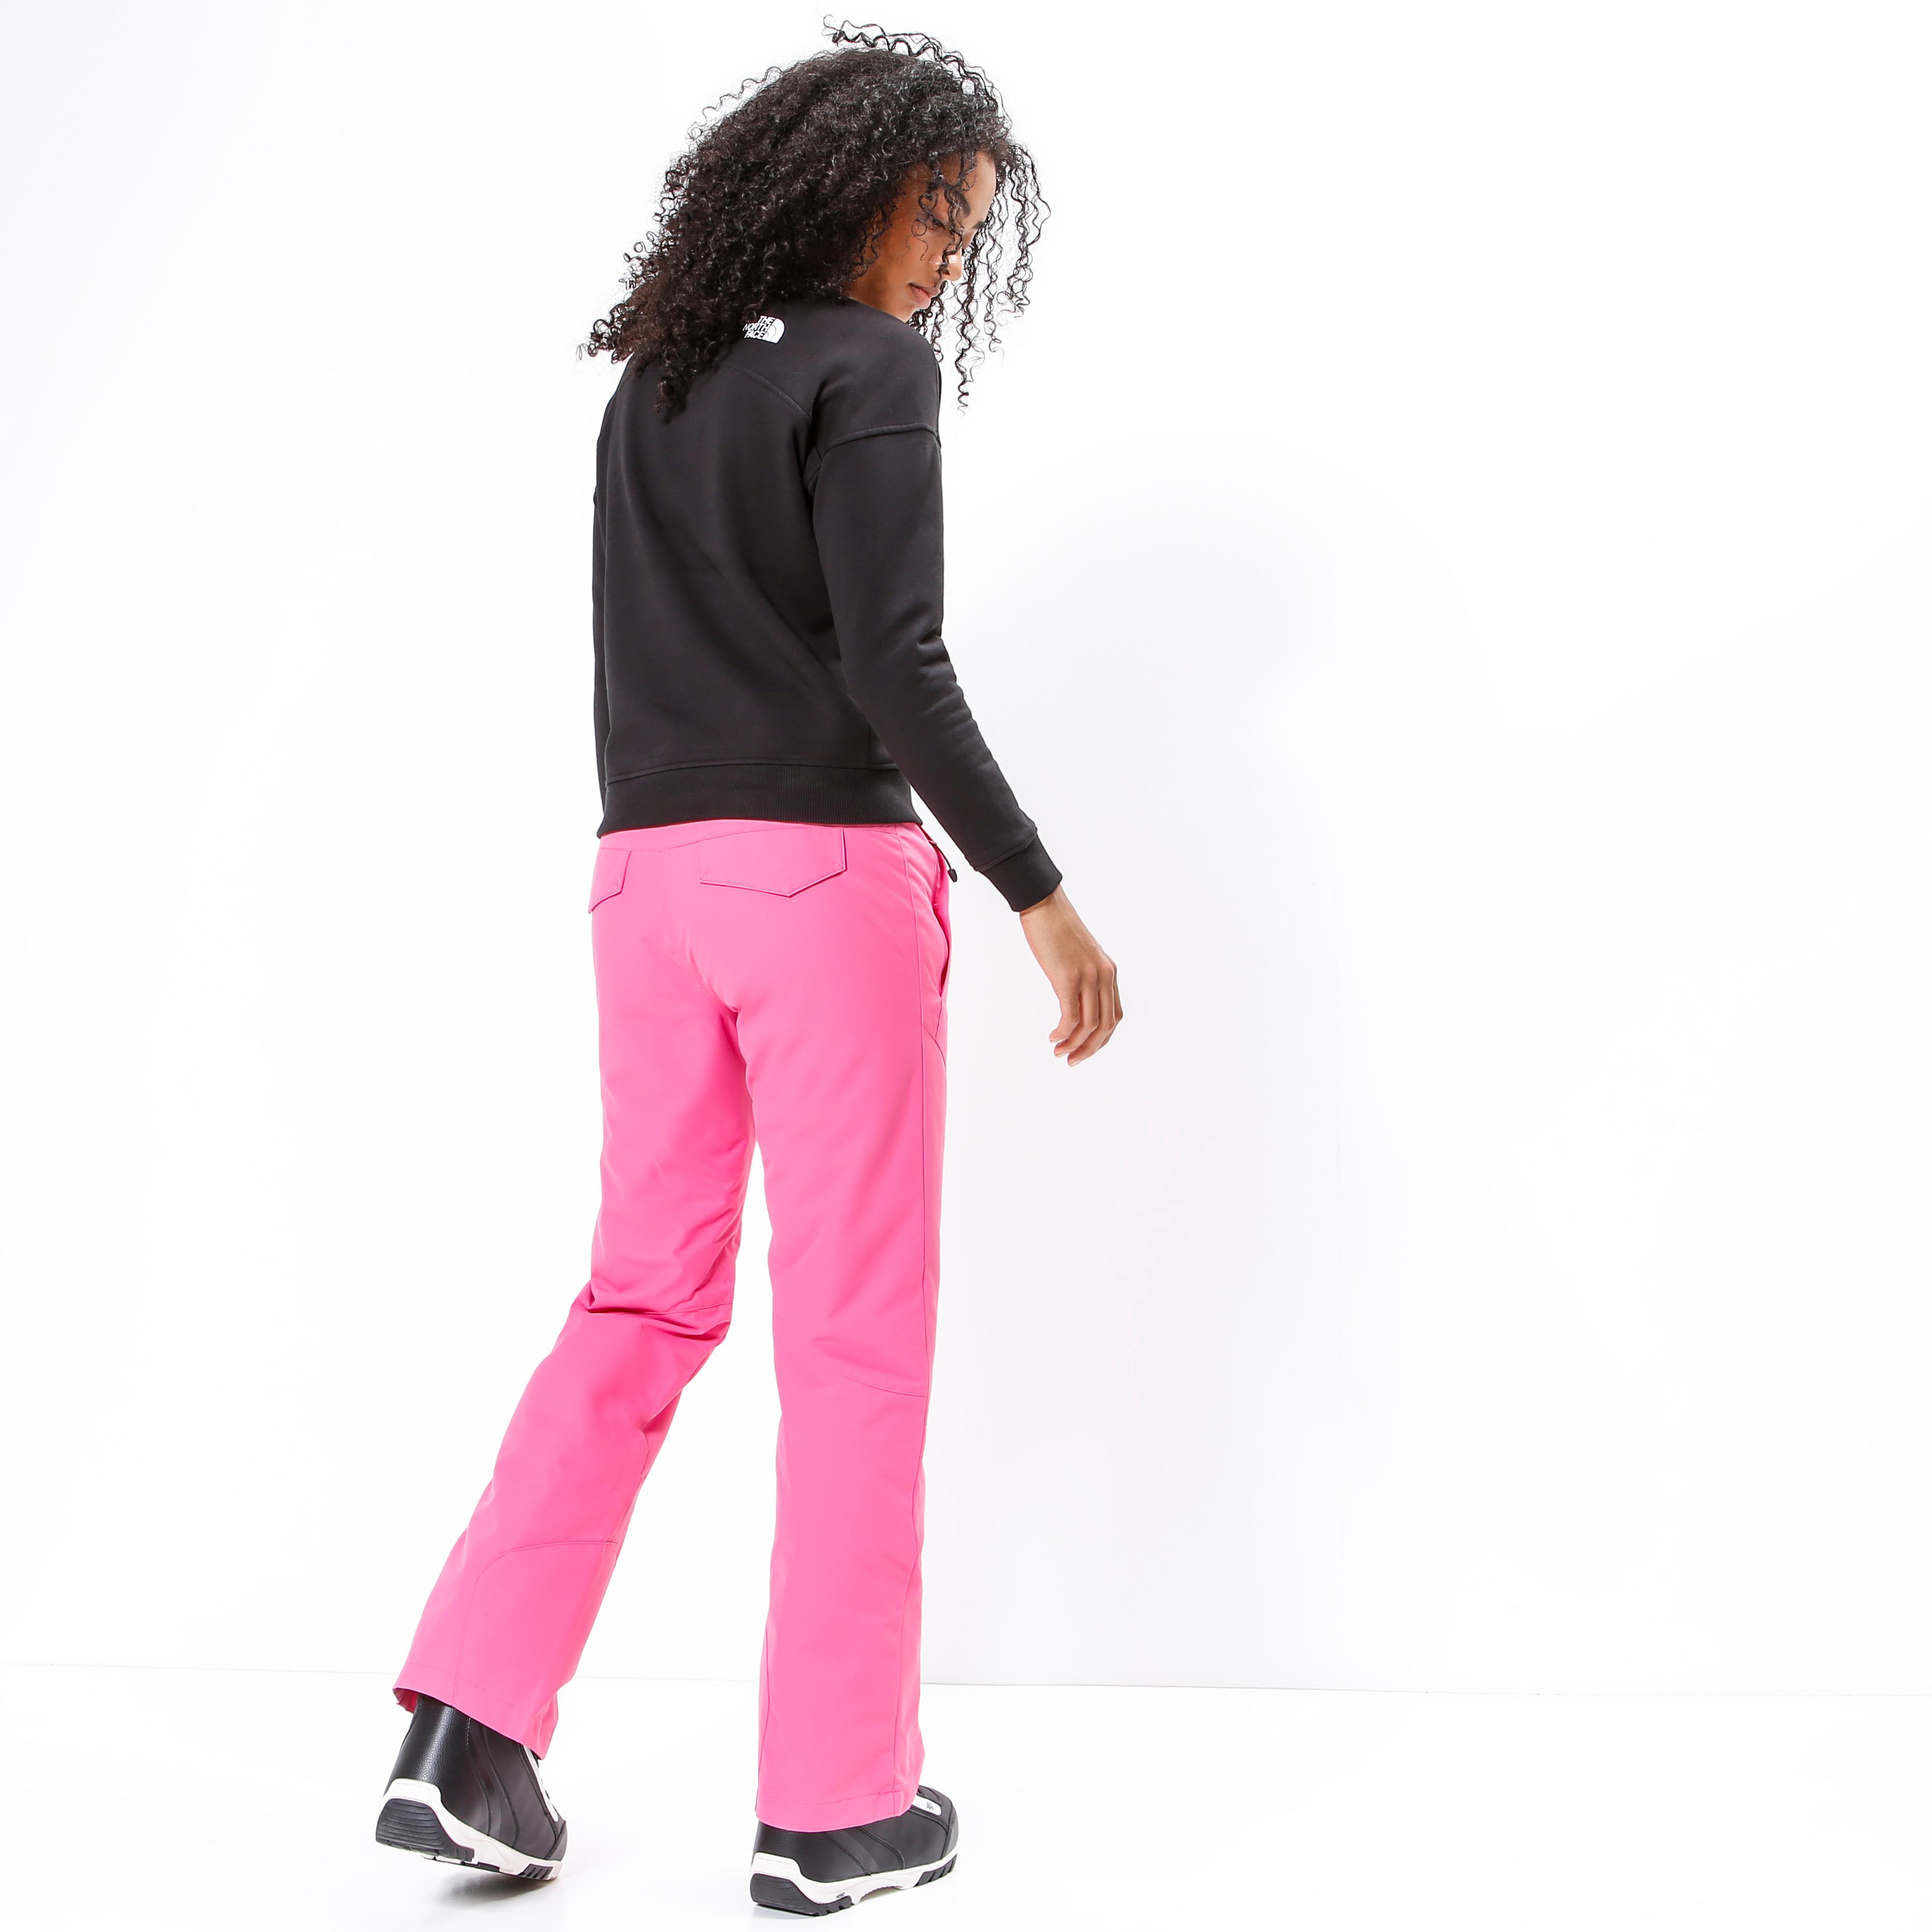 Shop Ziener dahlia von Damen kaufen SportScheck Skihose PINGA pink im Online